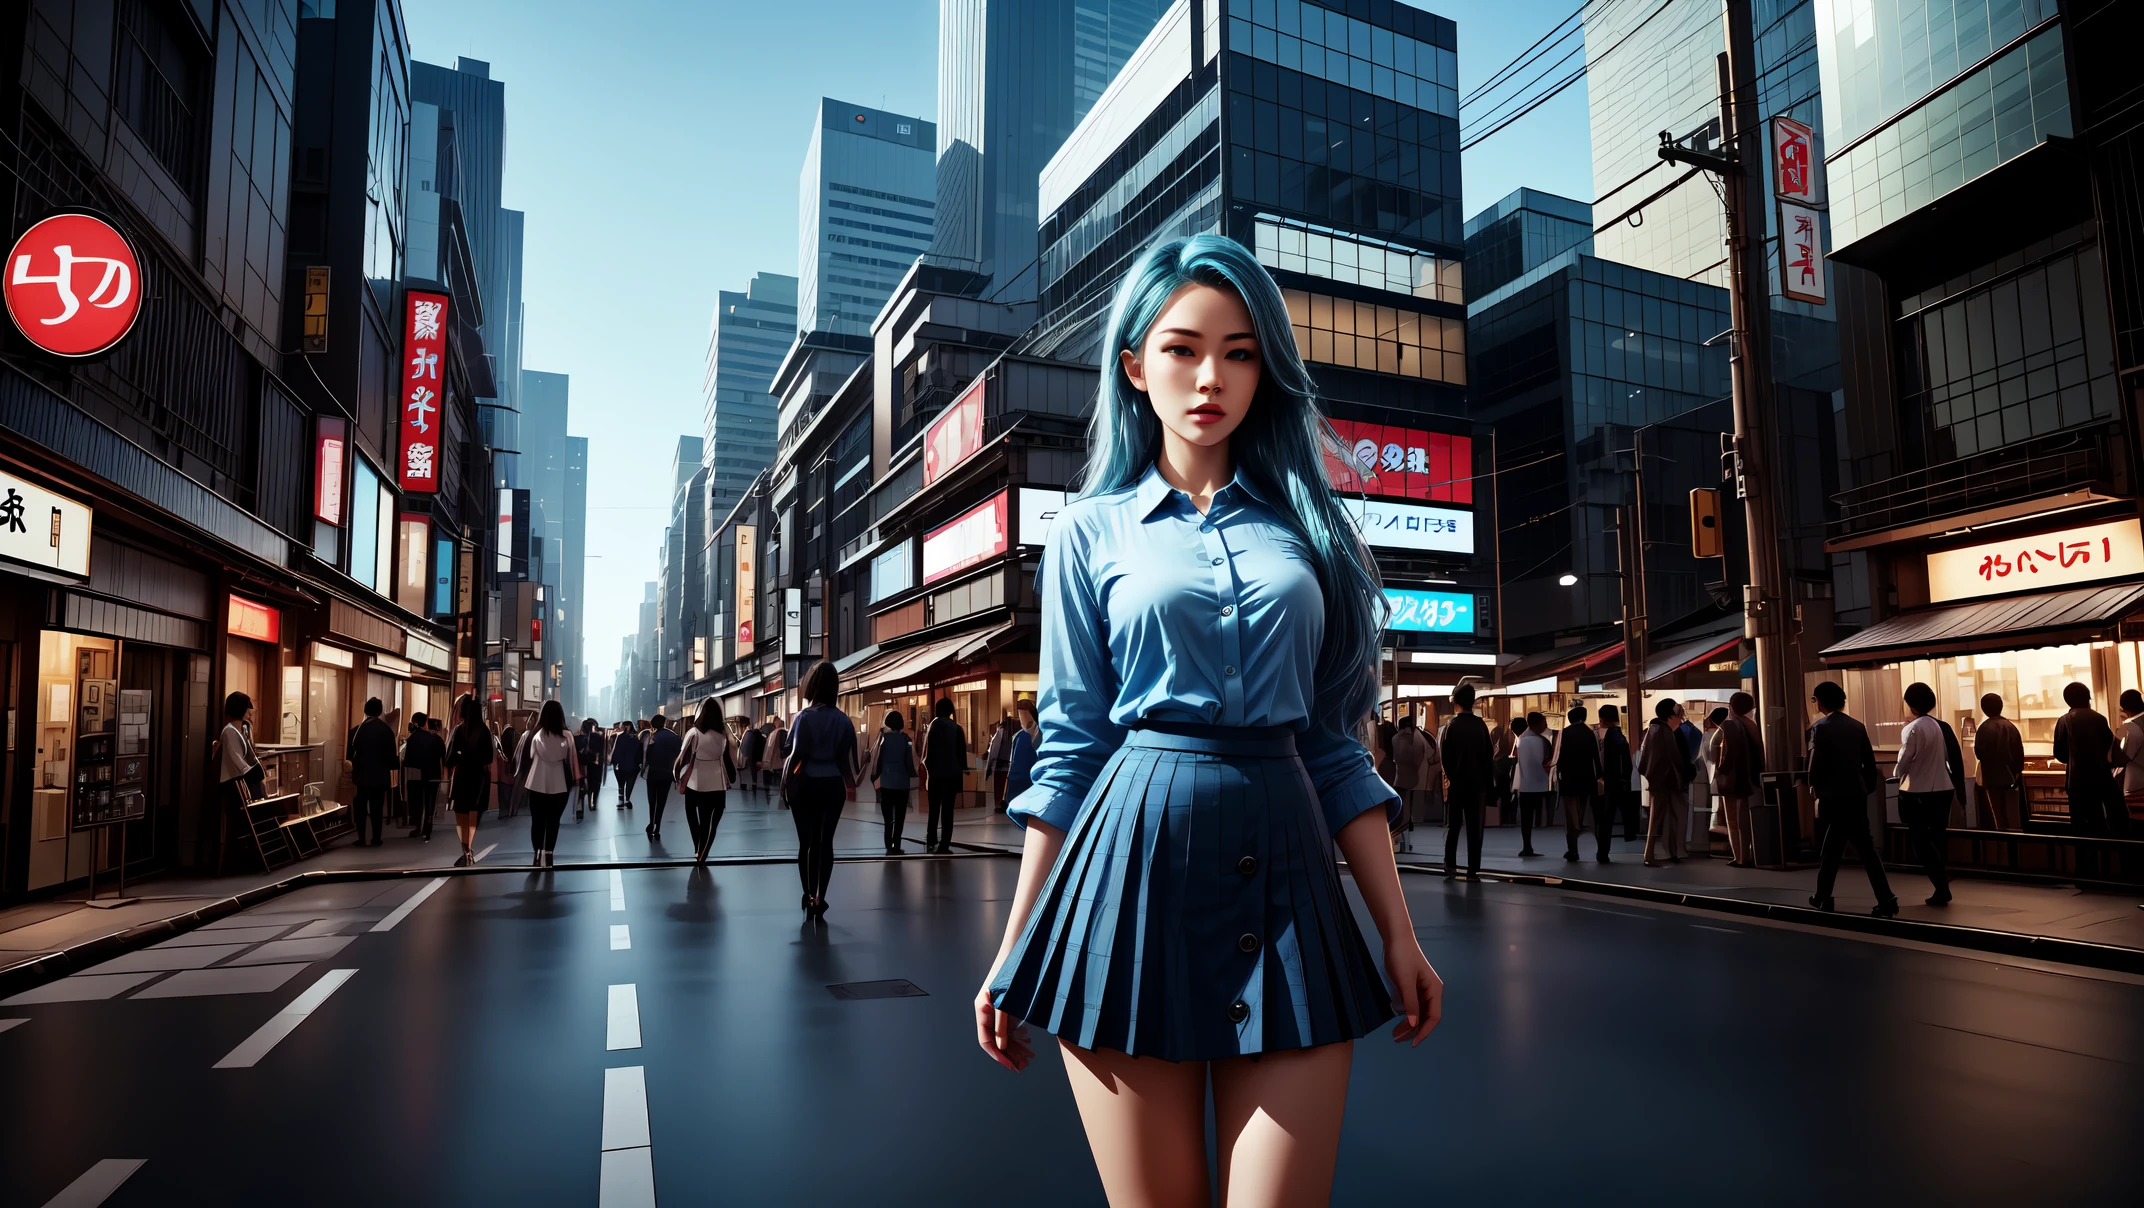 Meisterwerk, beste Qualität, 8K, Fotografische Realität, Realistisch, Oktan-Rendering, Belebte Straßen in Japan (1 Frau: 1.2), (Nur eine Frau auf der Leinwand: 1.5), (Spitzen-Hemd mit blauen Knöpfen), (Langes azurblaues Haar), (Hüftwickelrock), (blaue Augen), wunderschöne gewickelte High Heel Pumps, Oberkörperdarstellung,(Ganzkörper)